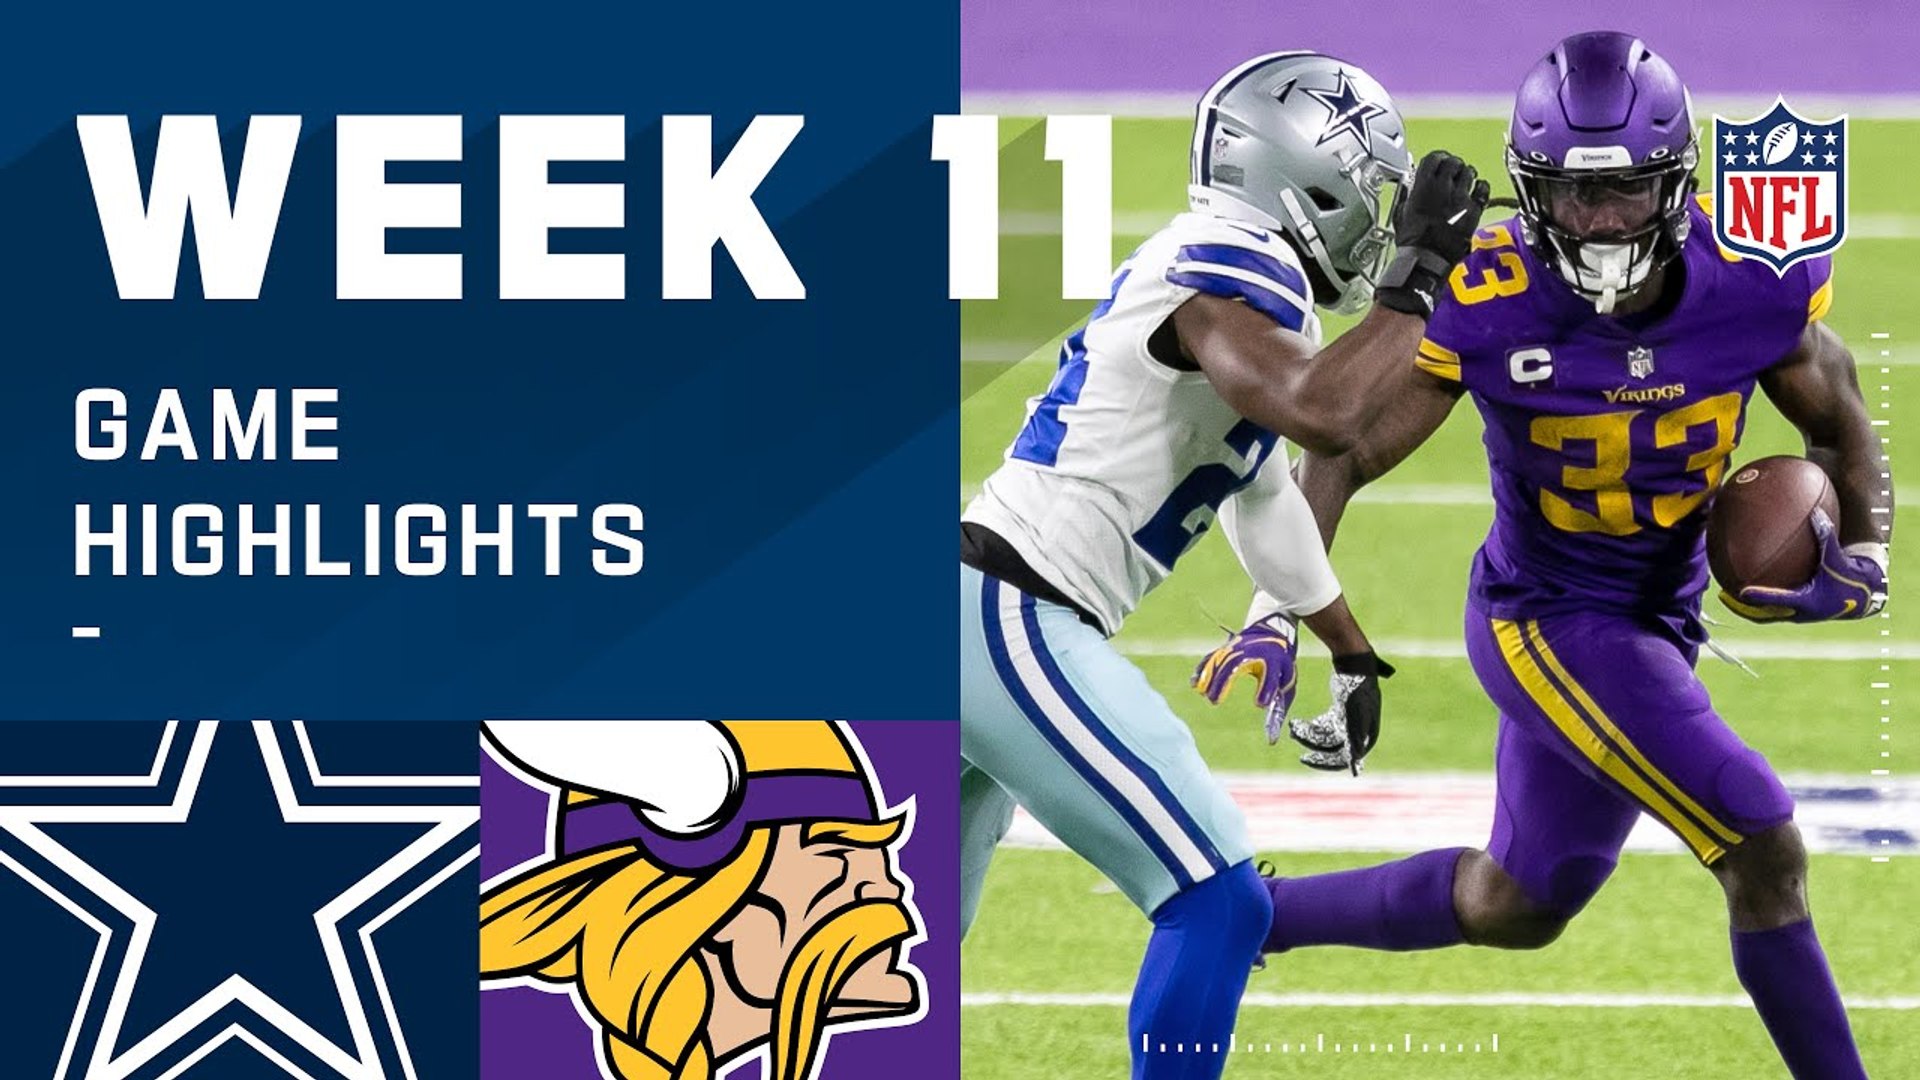 Cowboys vs. Vikings Week 11 Highlights | NFL 2020 - video Dailymotion